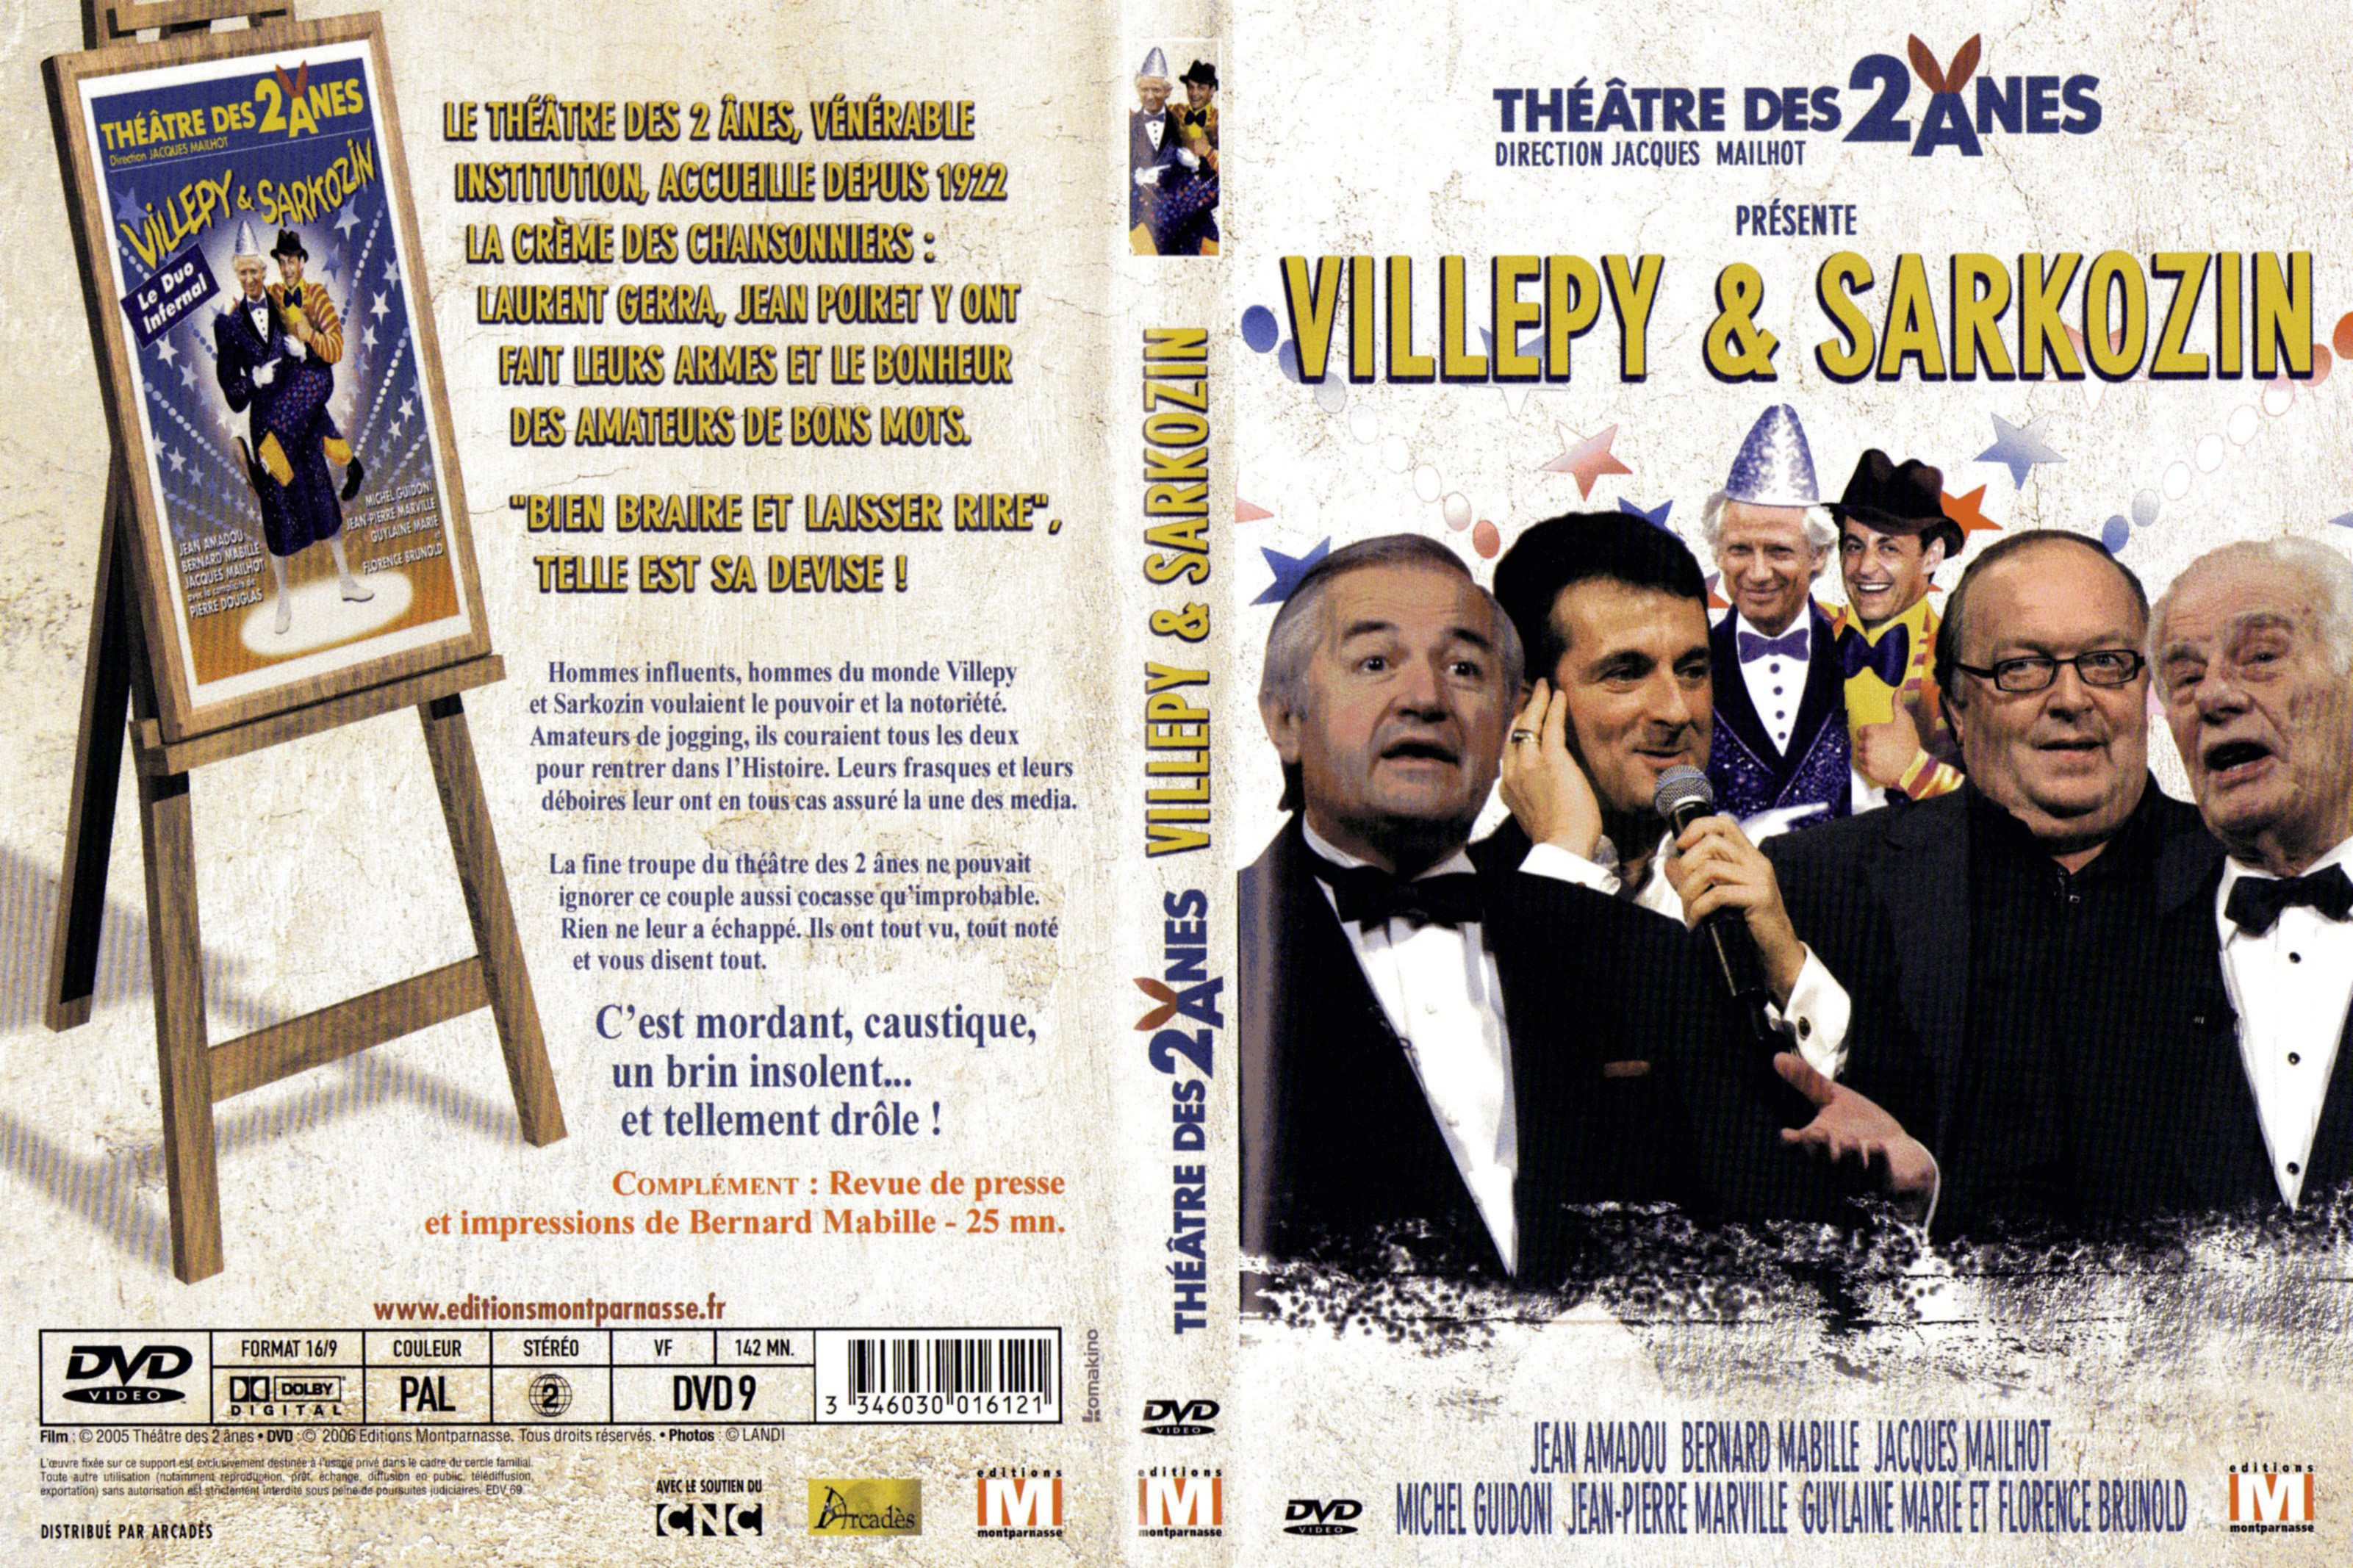 Jaquette DVD Theatre des 2 anes - Villepy et Sarkozin